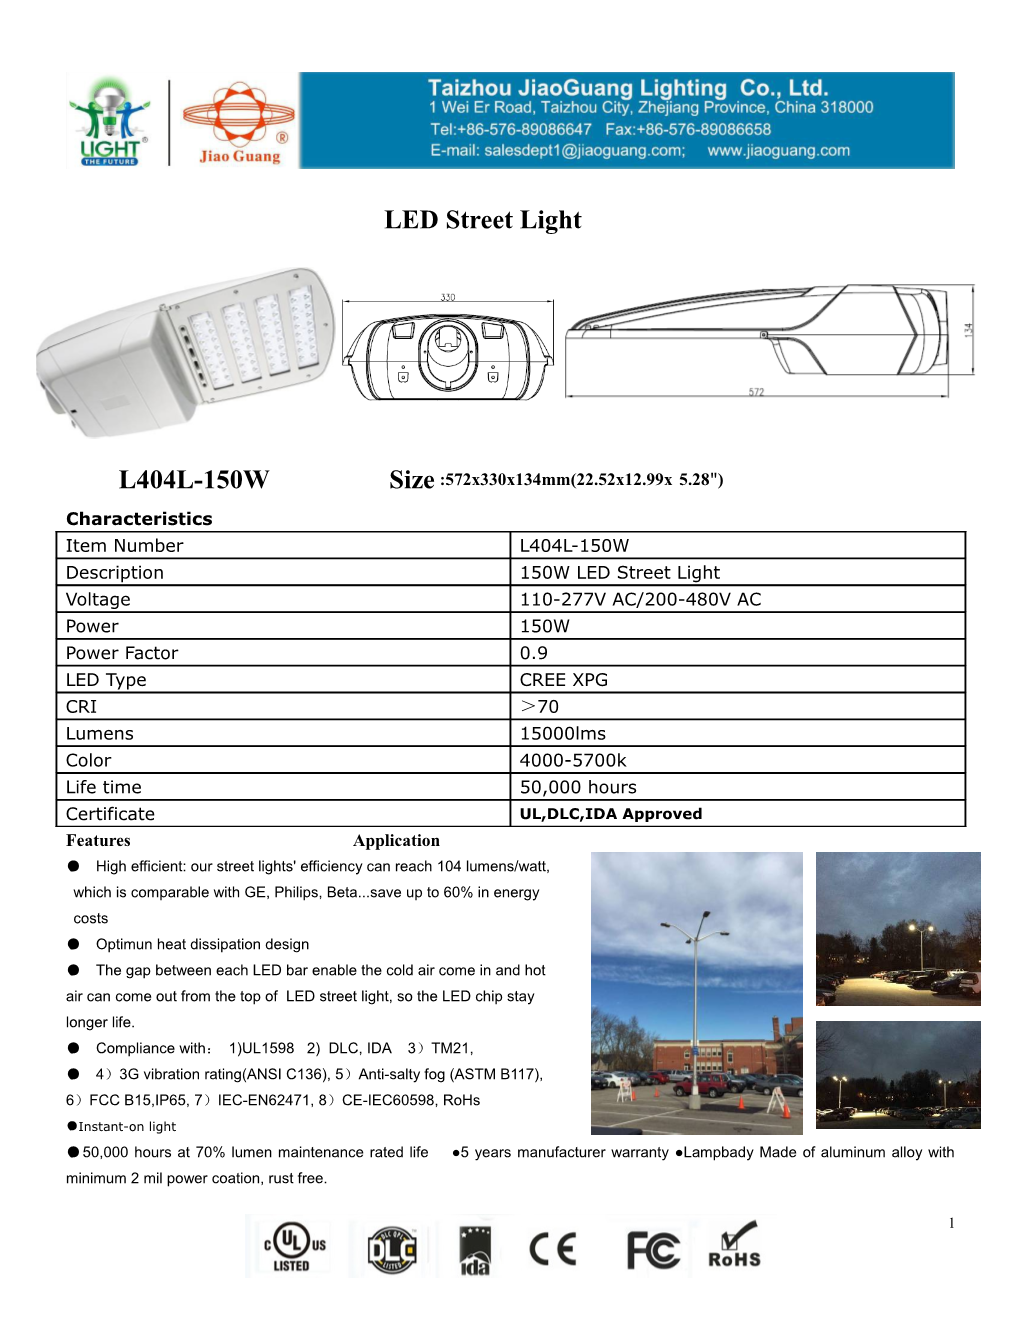 High Efficient: Our Street Lights' Efficiency Can Reach 104 Lumens/Watt